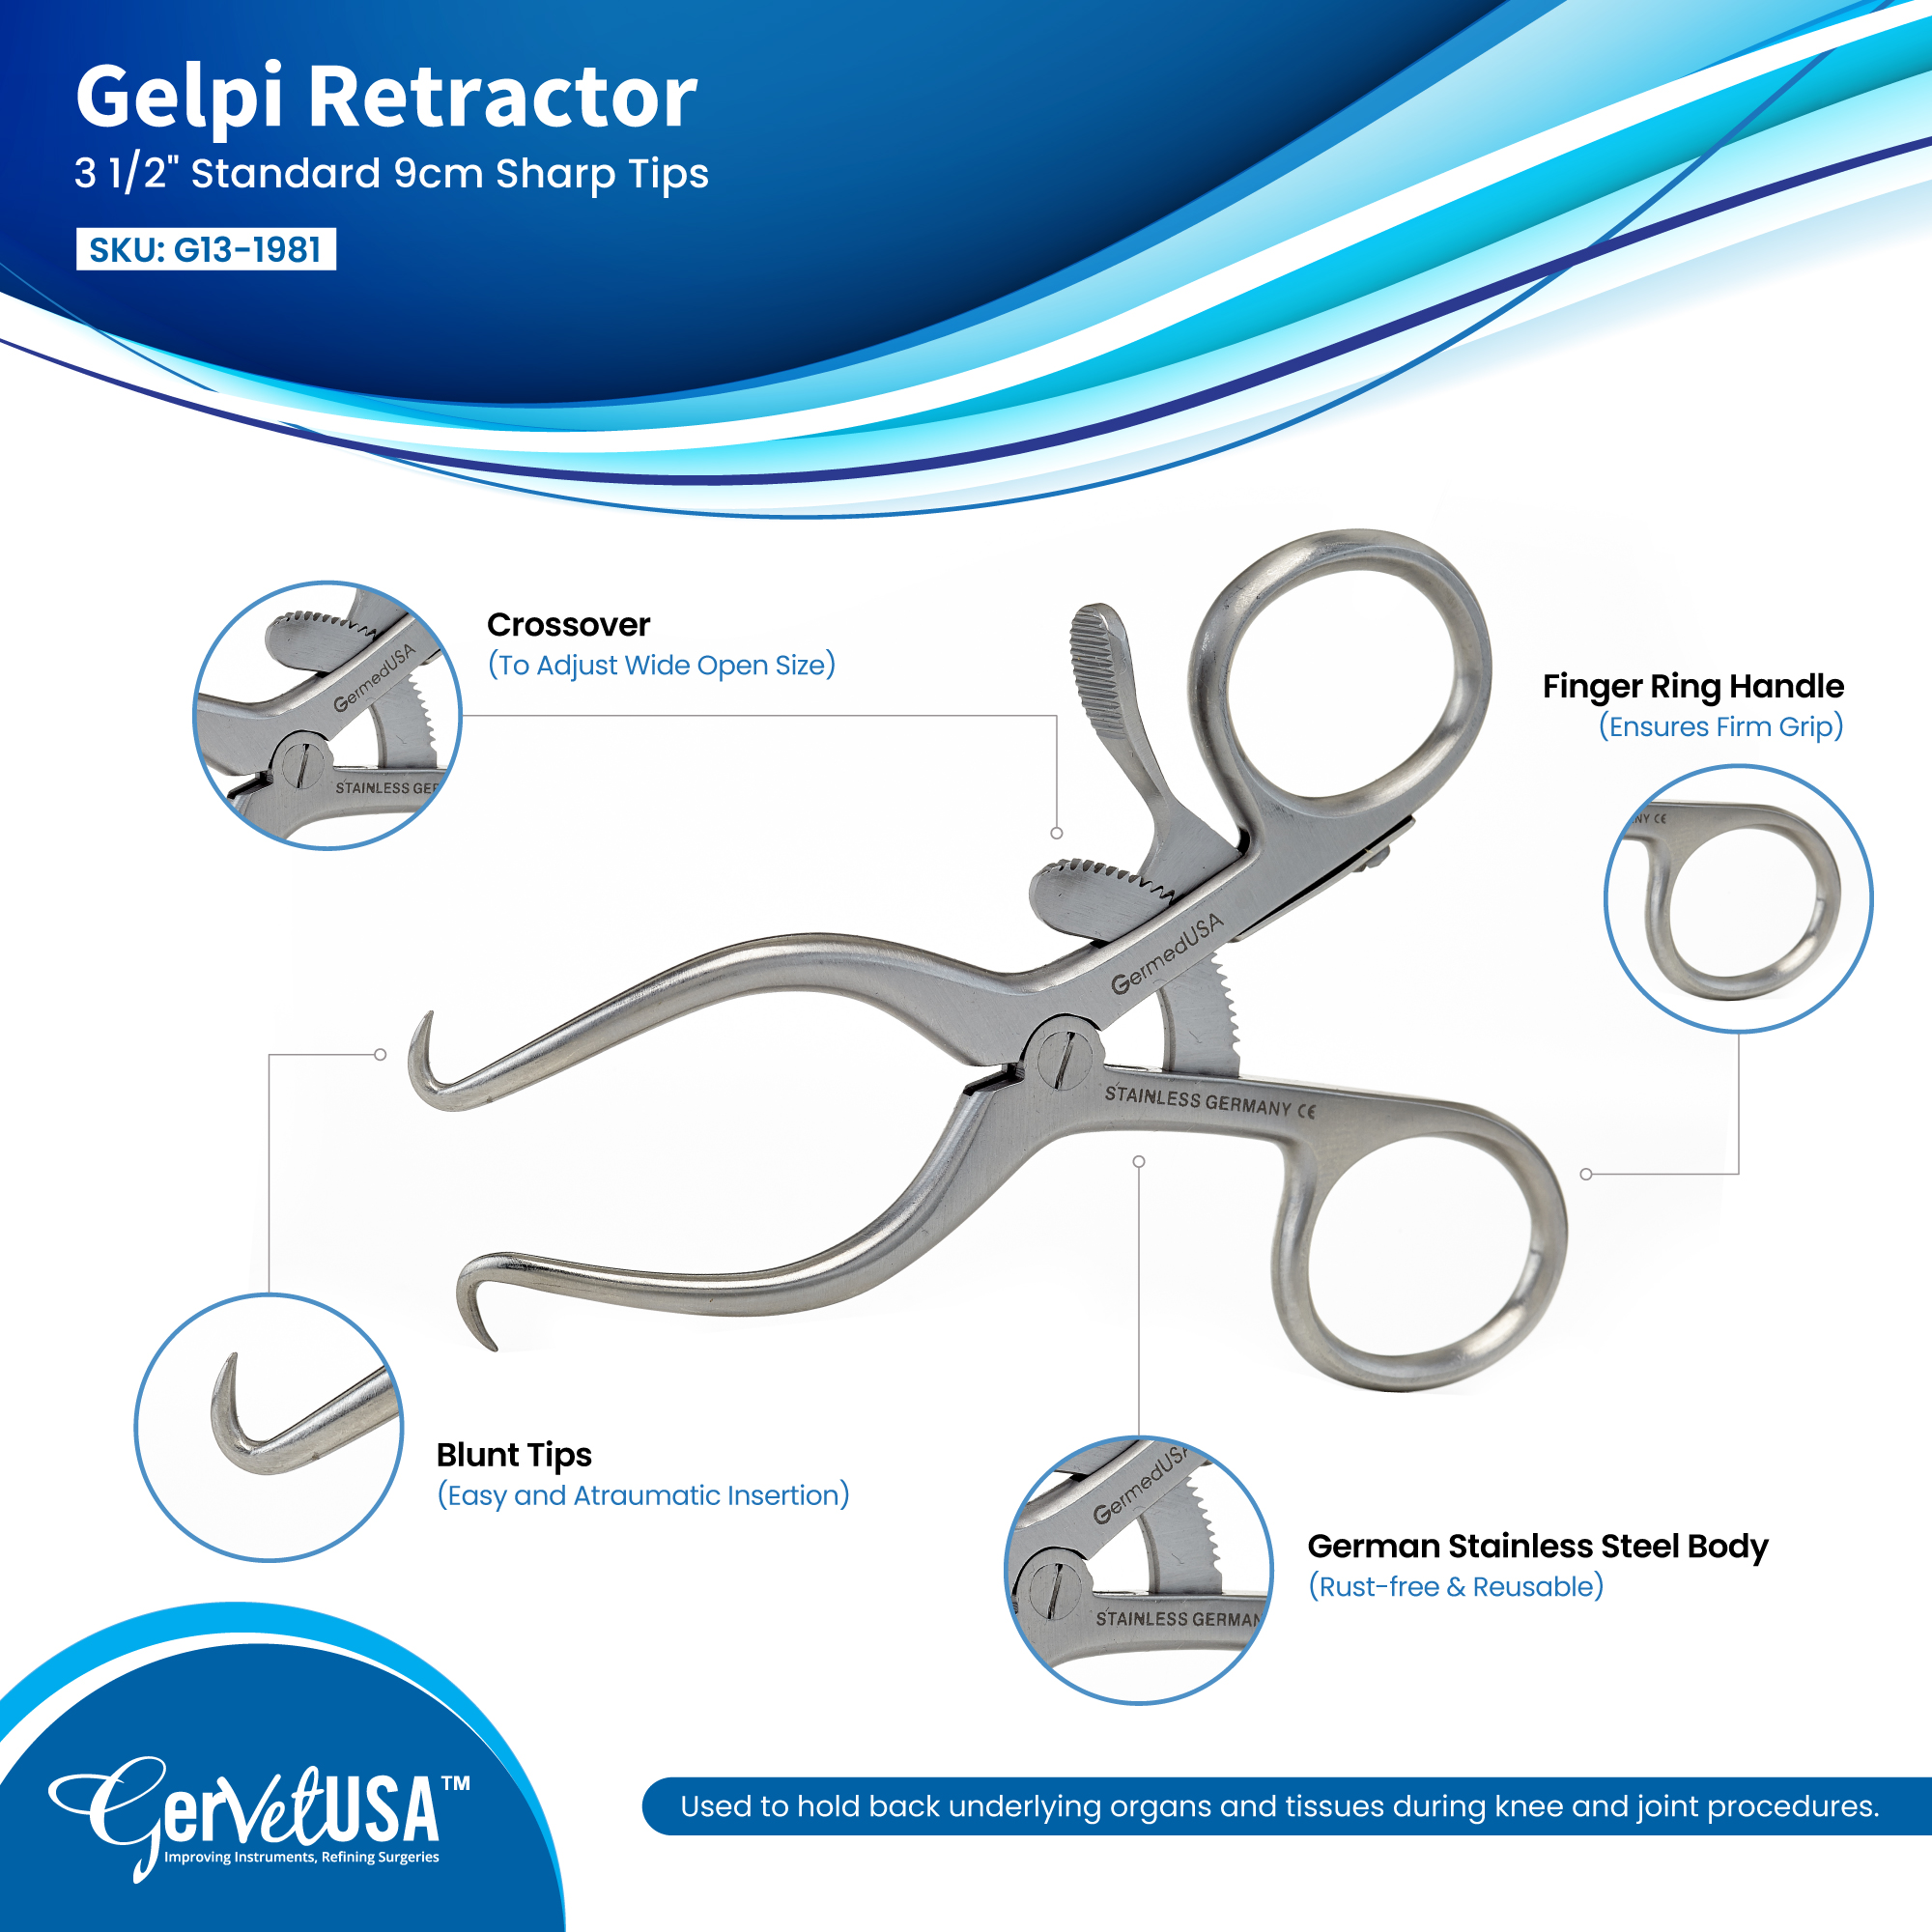 Gelpi Retractor 3 1/2" Standard 9cm Sharp Tips